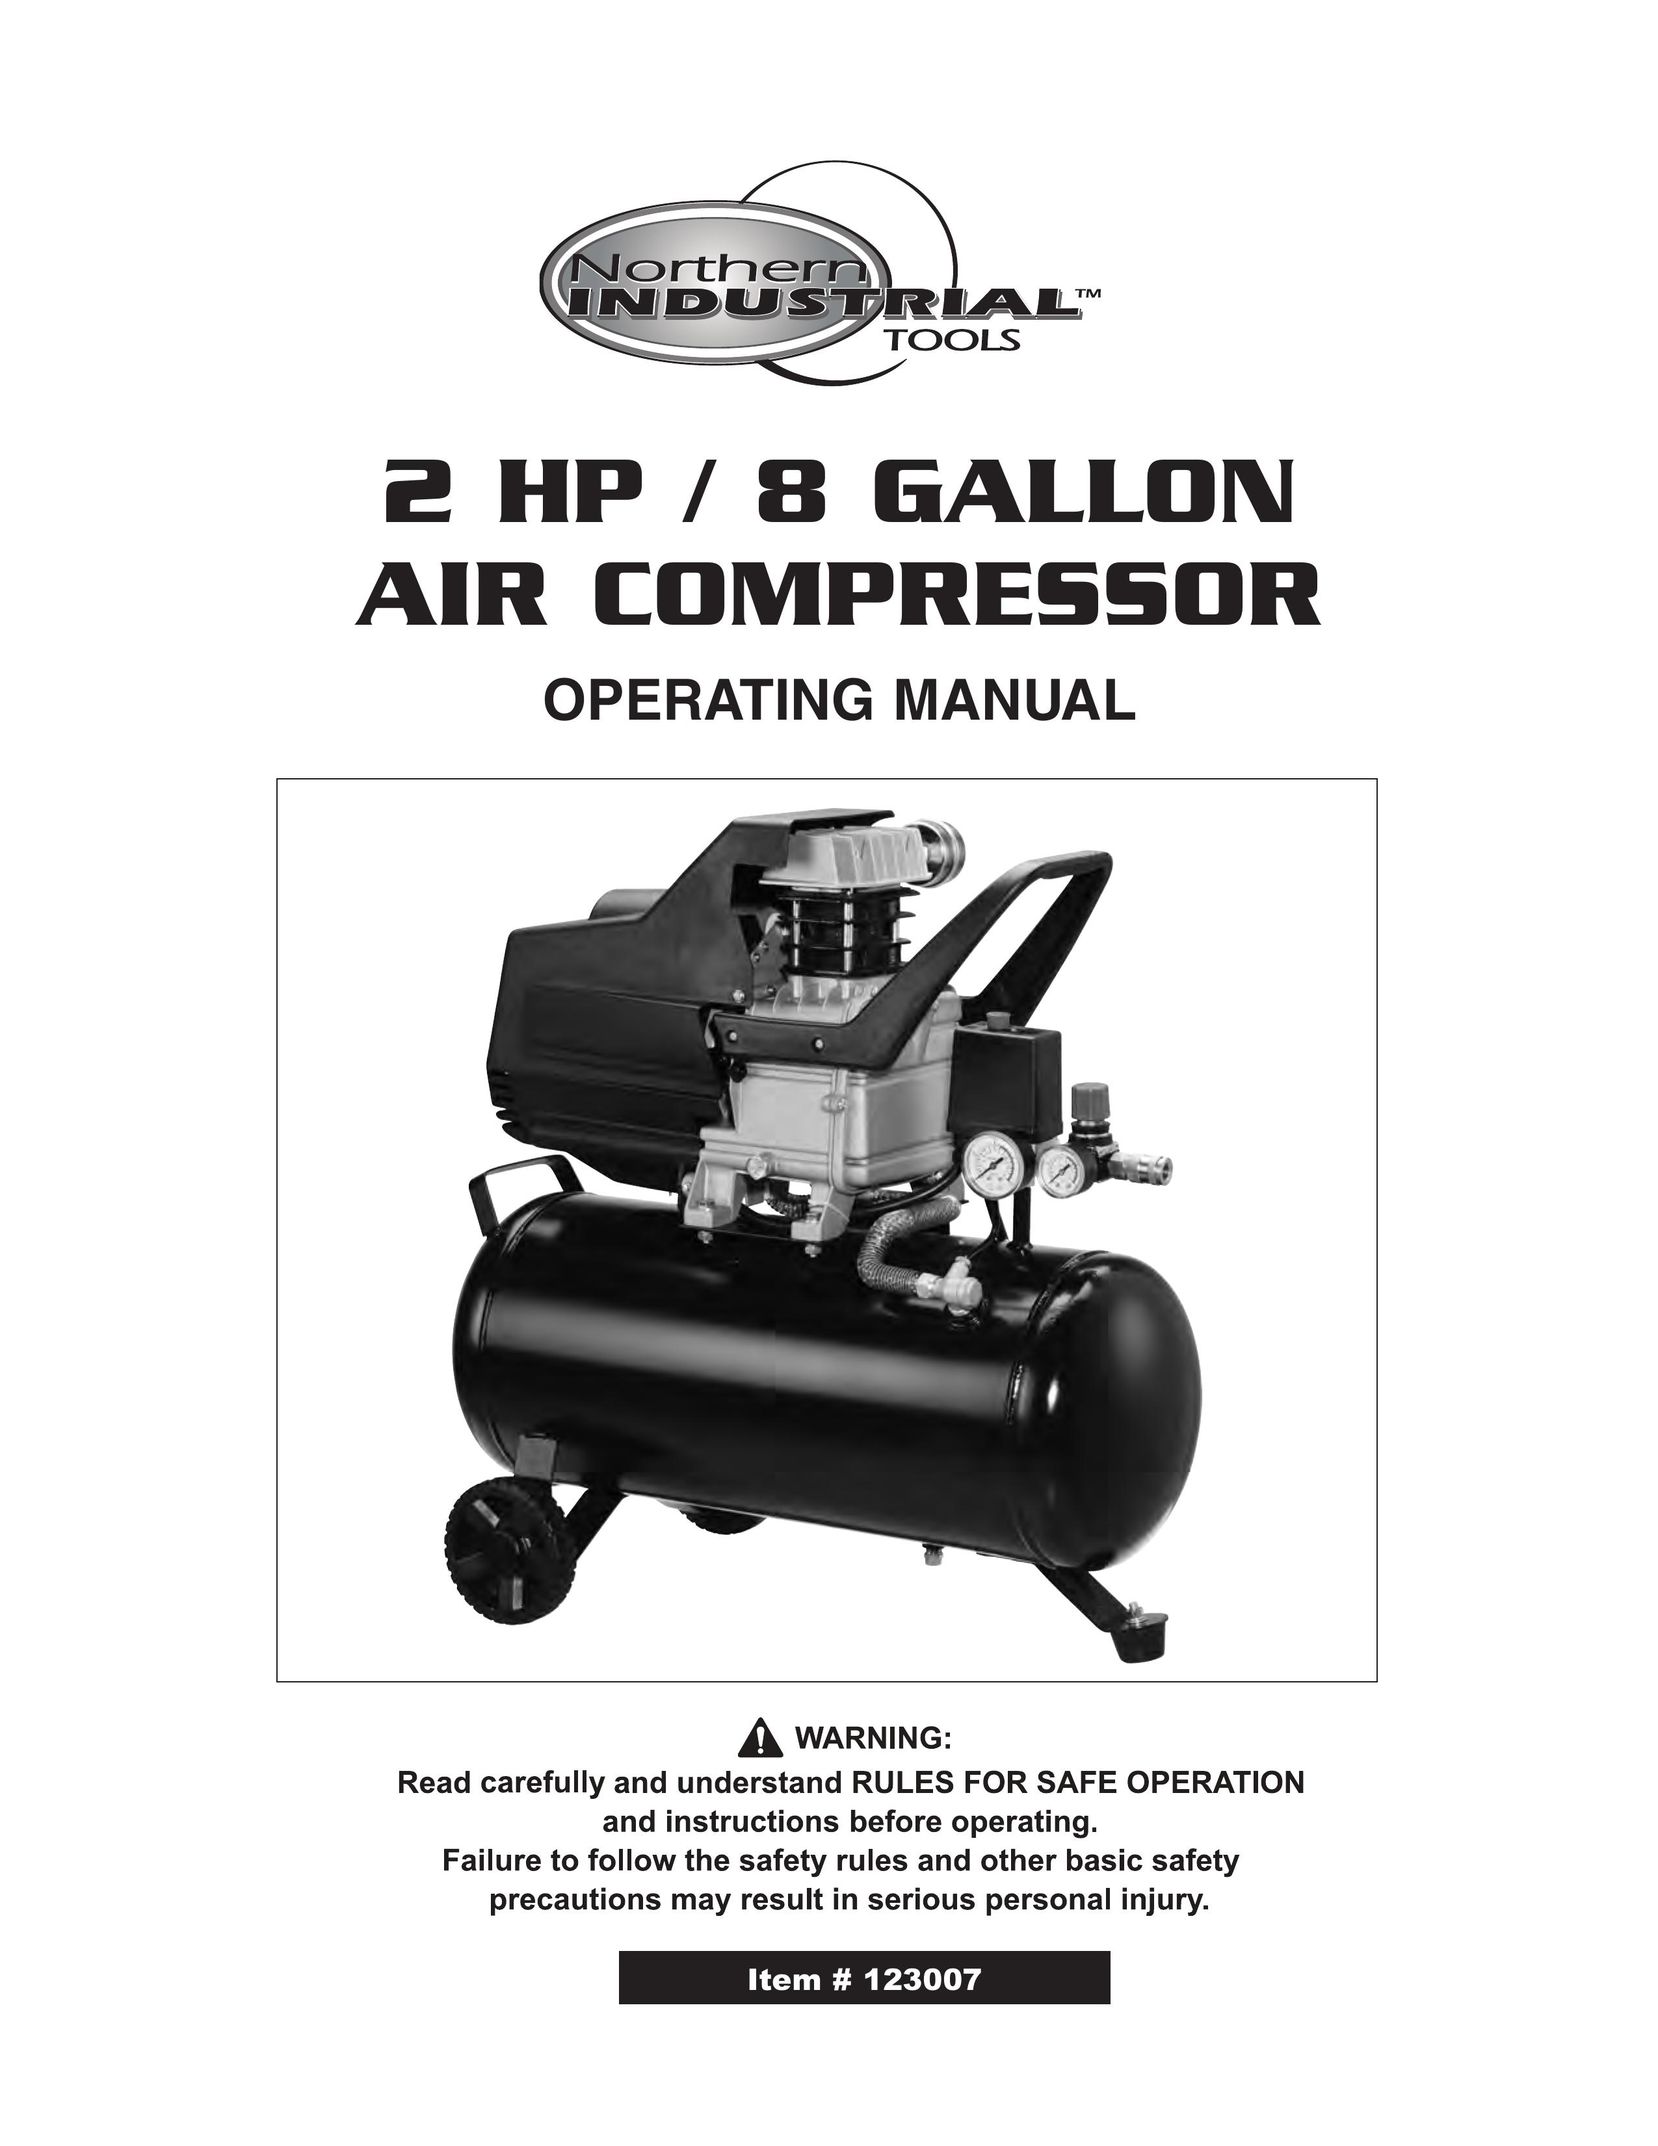 Northern Industrial Tools 2 HP / 8 GALLON AIR COMPRESSOR Air Compressor User Manual